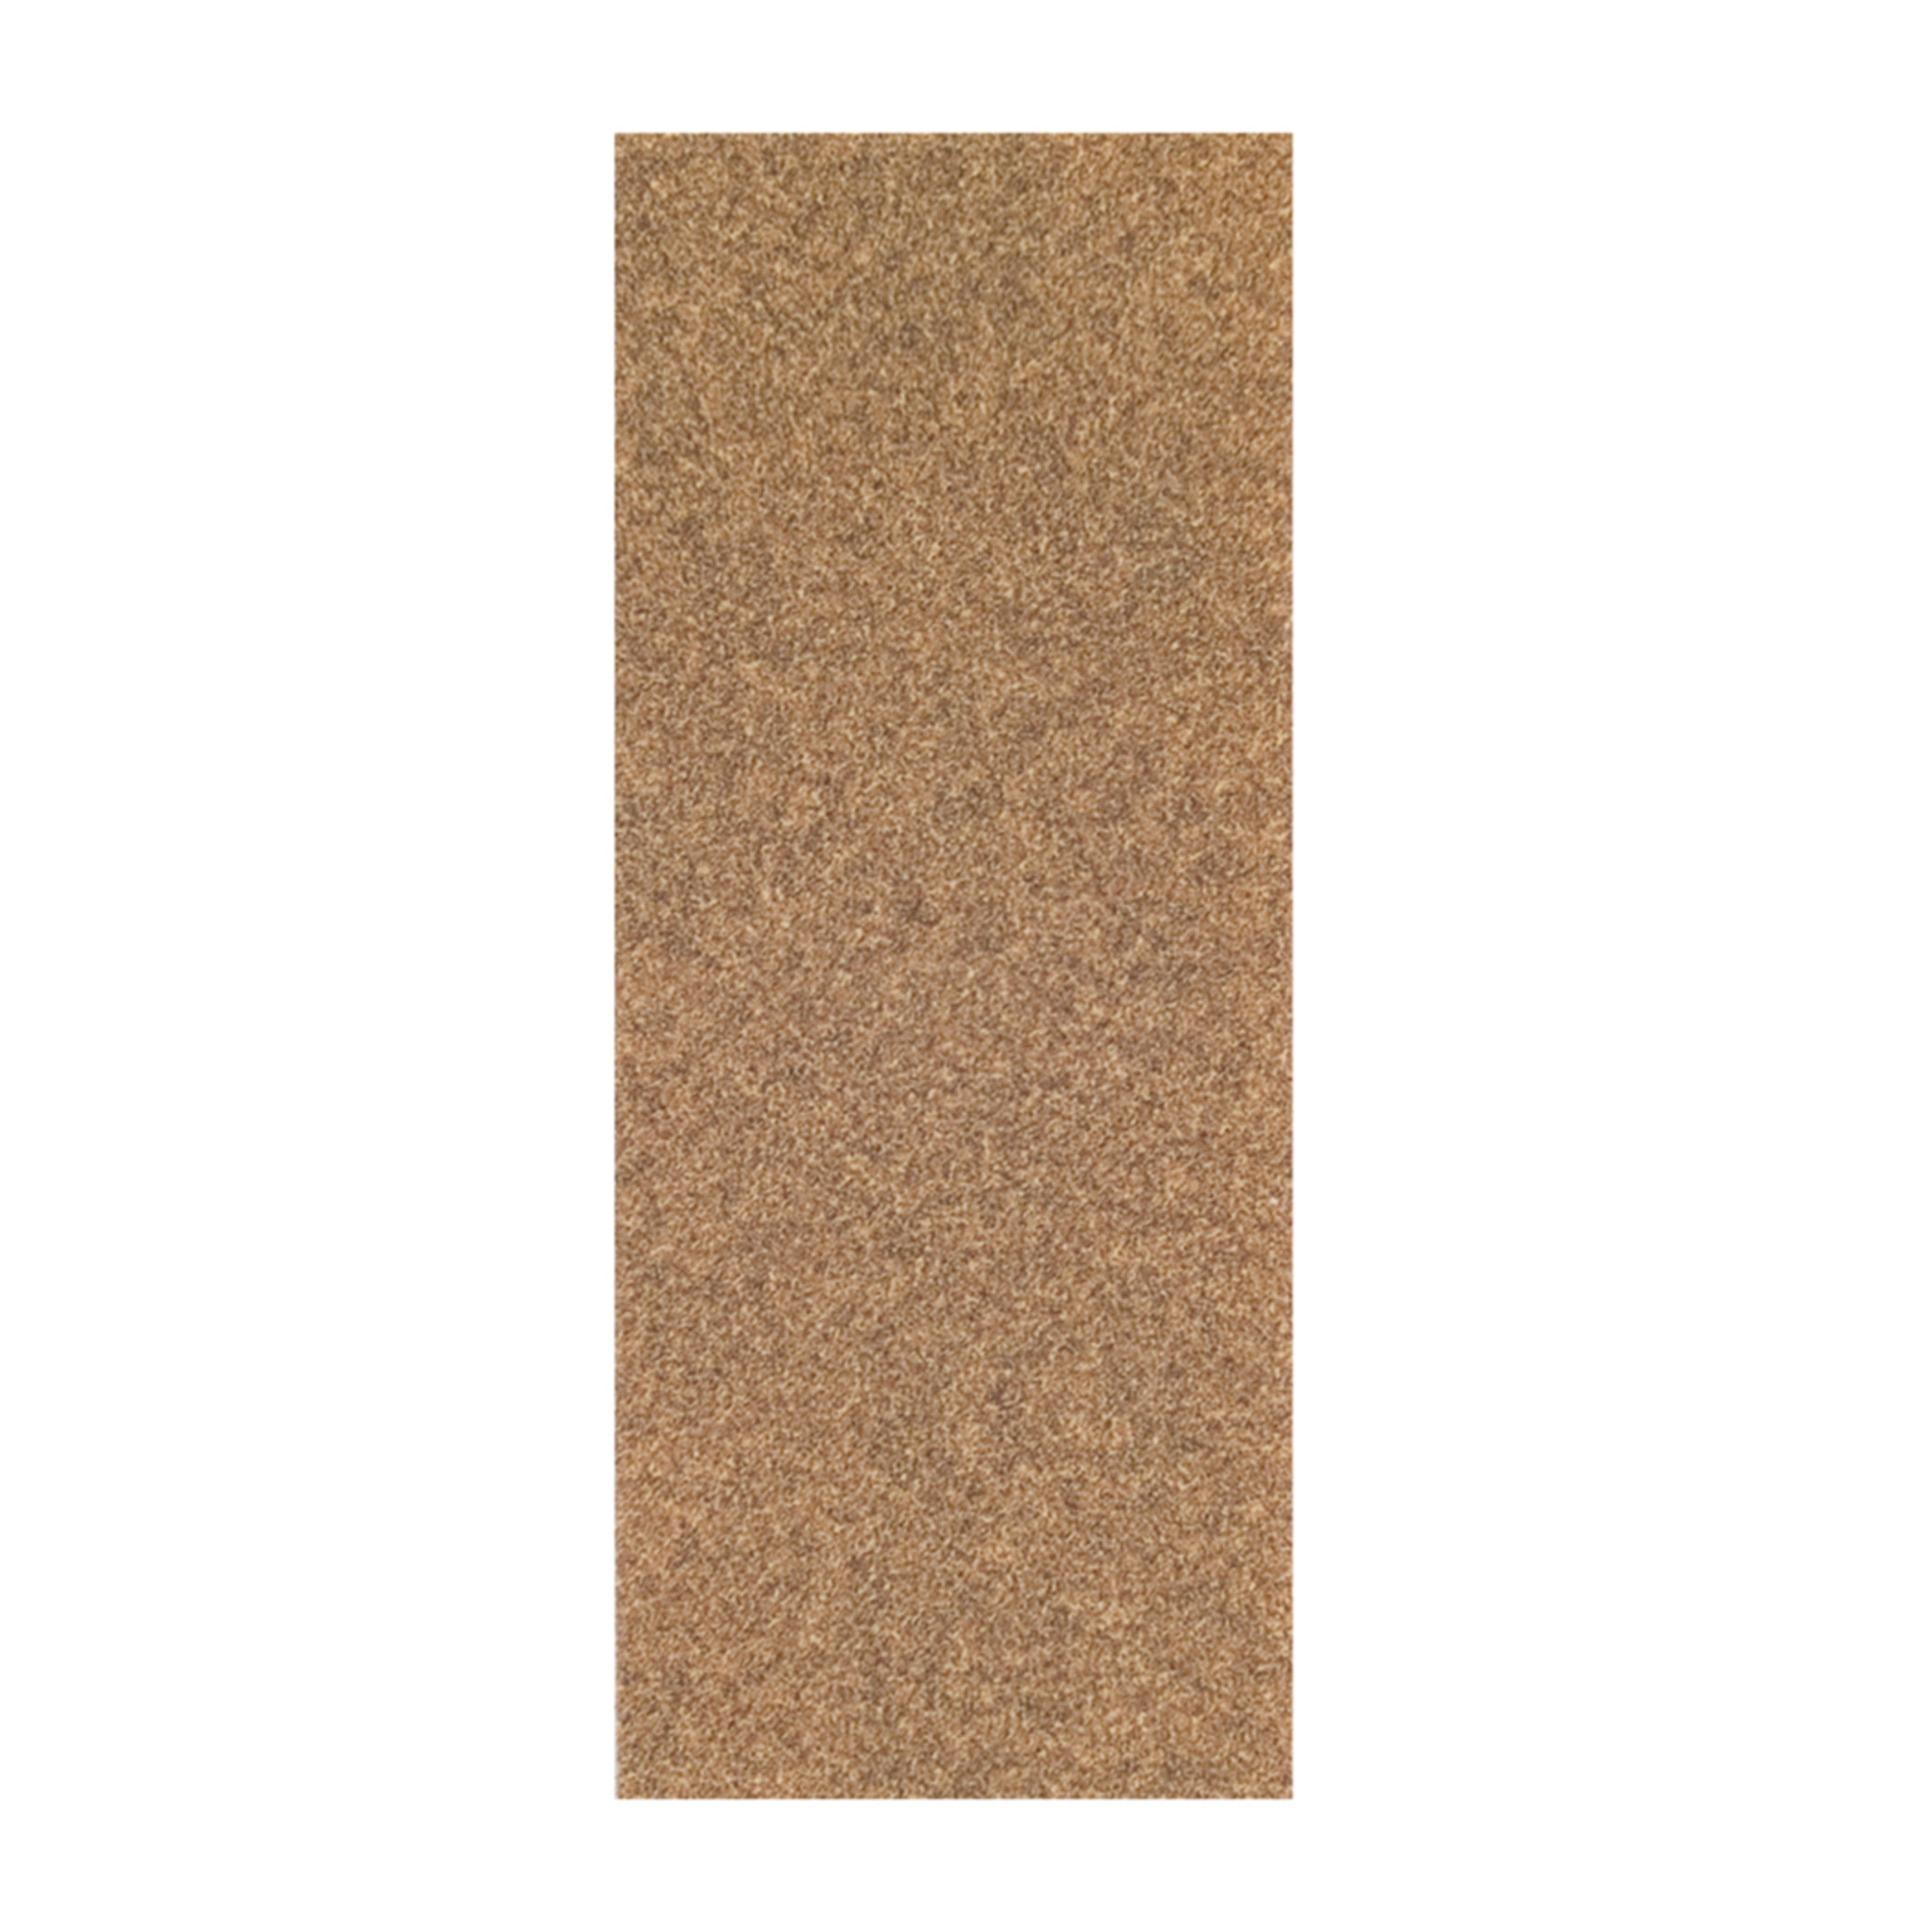 Norton® Adalox® 66261102895 A213 Coated Sandpaper Cut Sheet, 9 in L x 3-2/3 in W, P120 Grit, Fine Grade, Aluminum Oxide Abrasive, Paper Backing